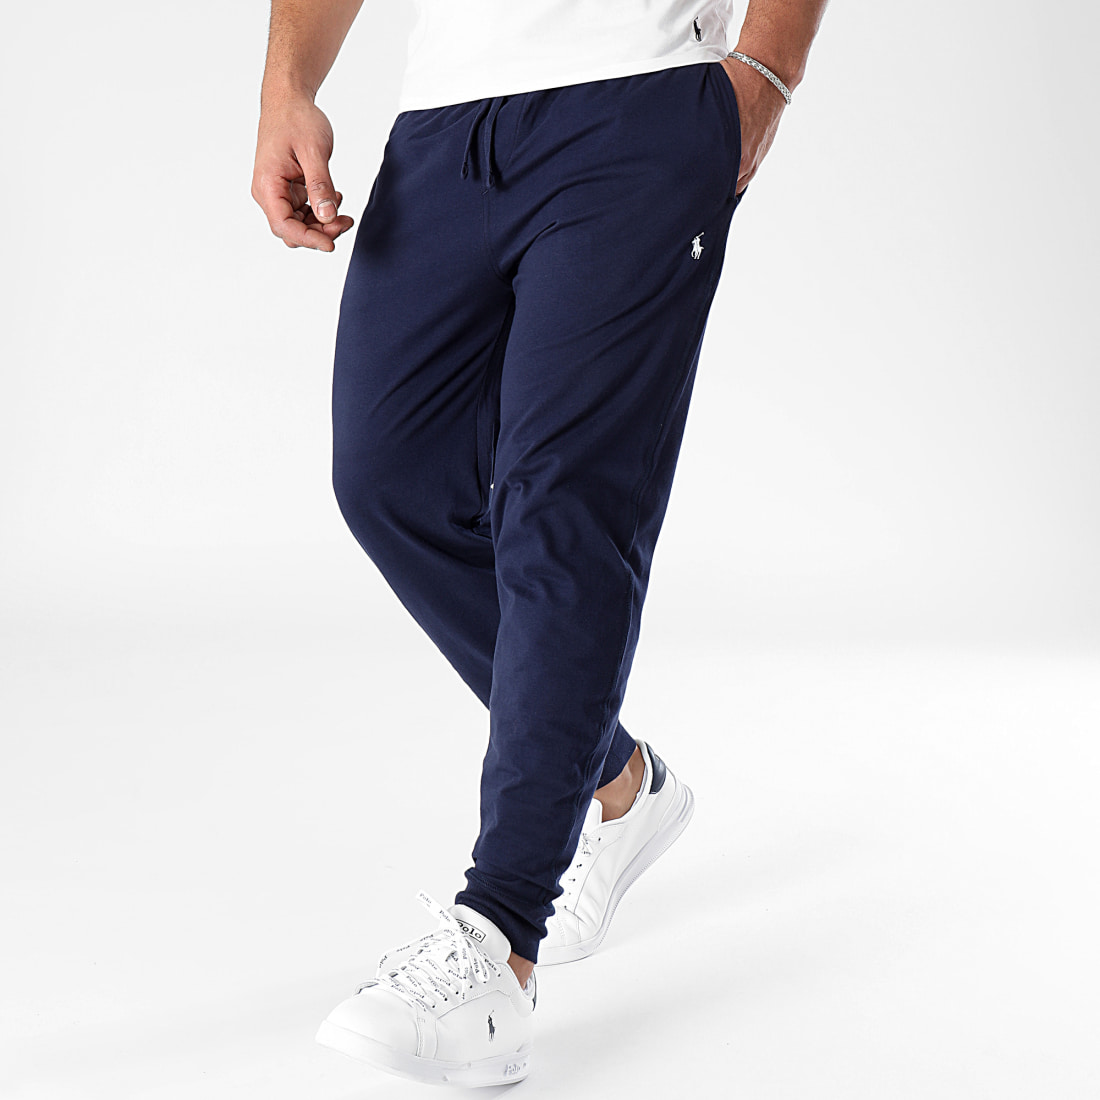 Pantalon de jogging Ralph Lauren gris en coton